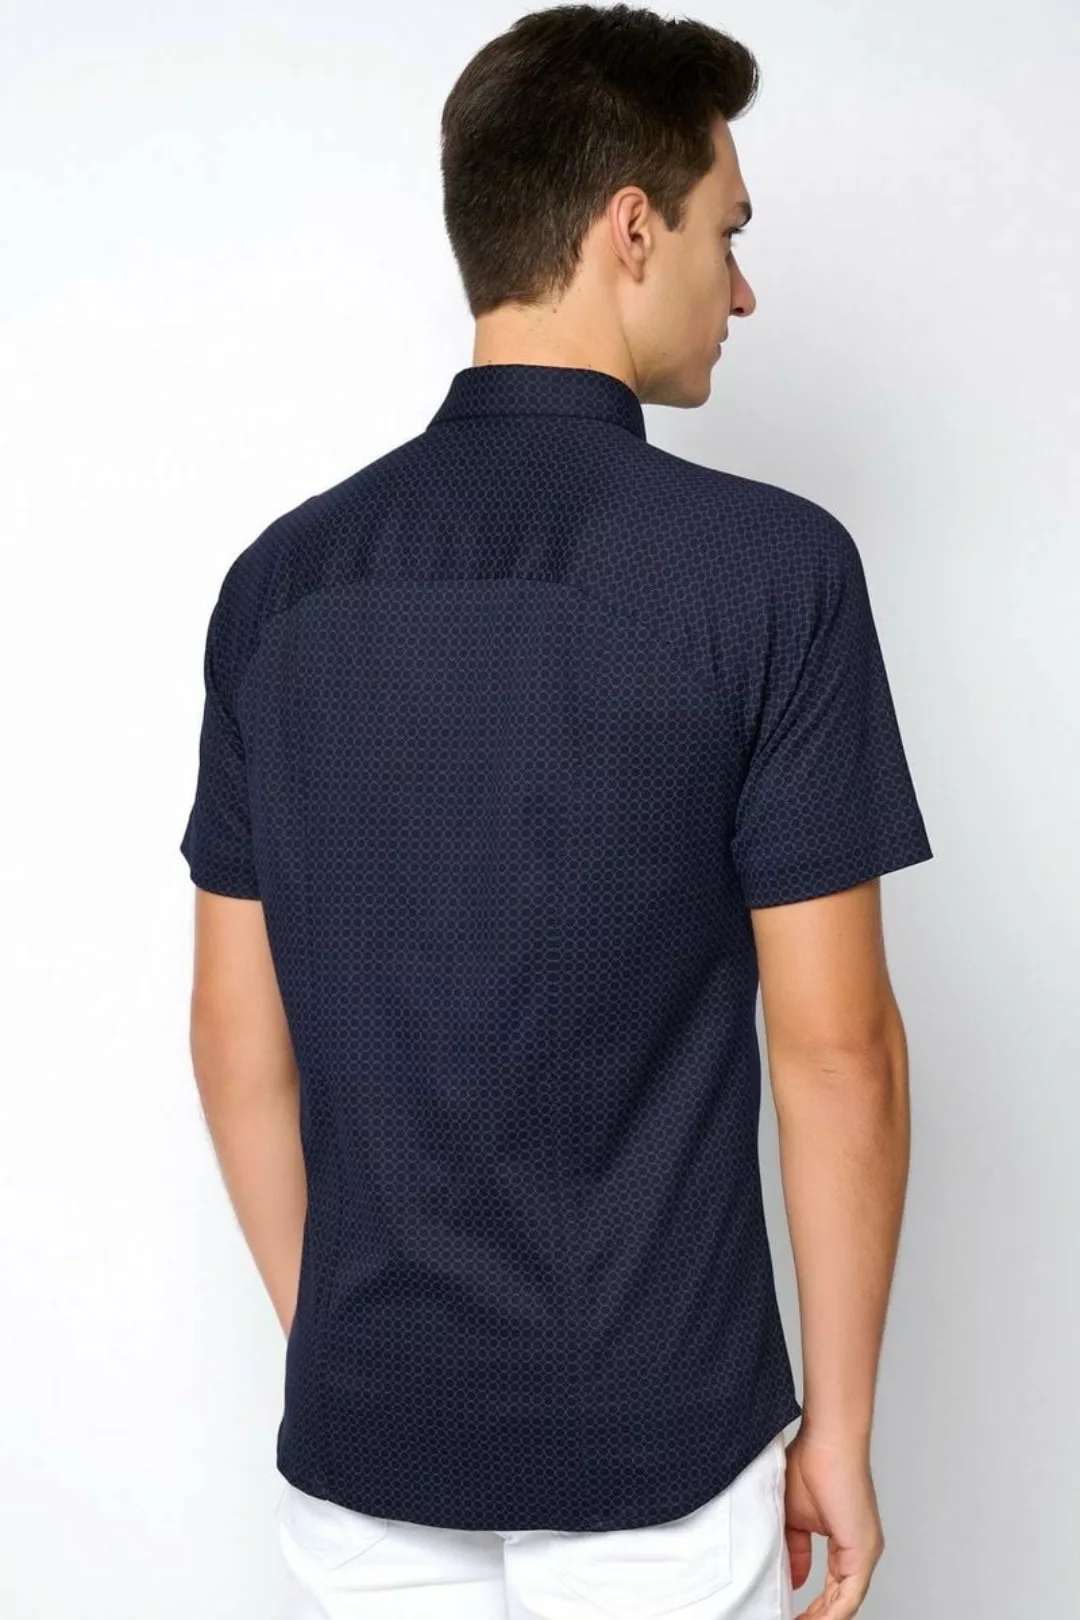 Desoto Short Sleeve Jersey Hemd Druck Navy - Größe XL günstig online kaufen